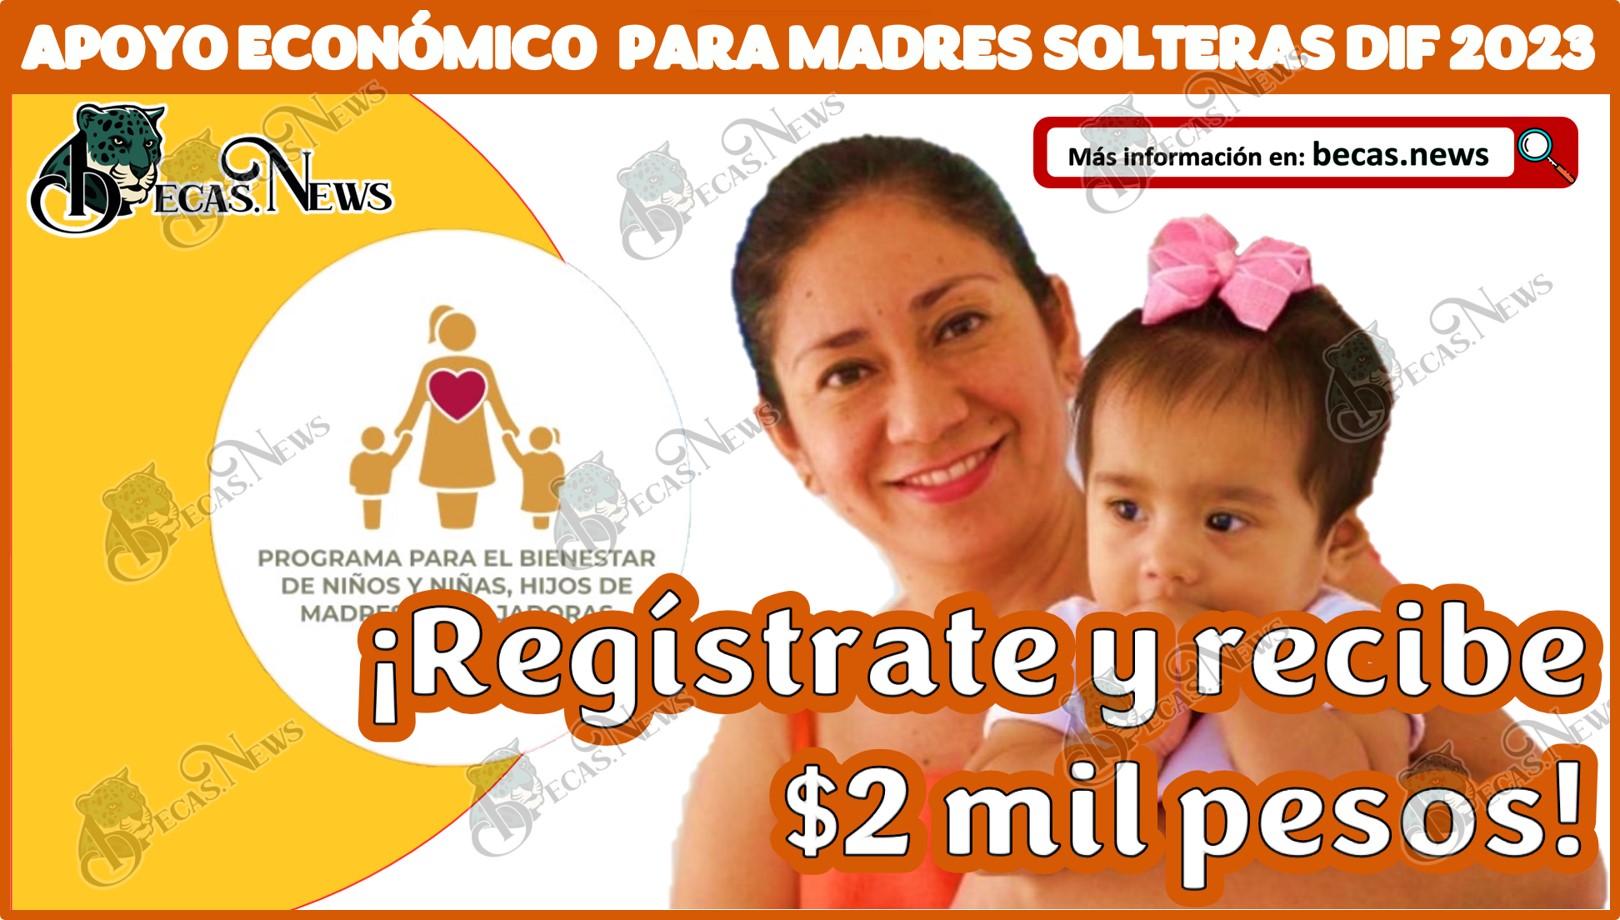 Apoyo económico para madres solteras DIF 2023 | ¡Regístrate y gana $2 mil pesos!